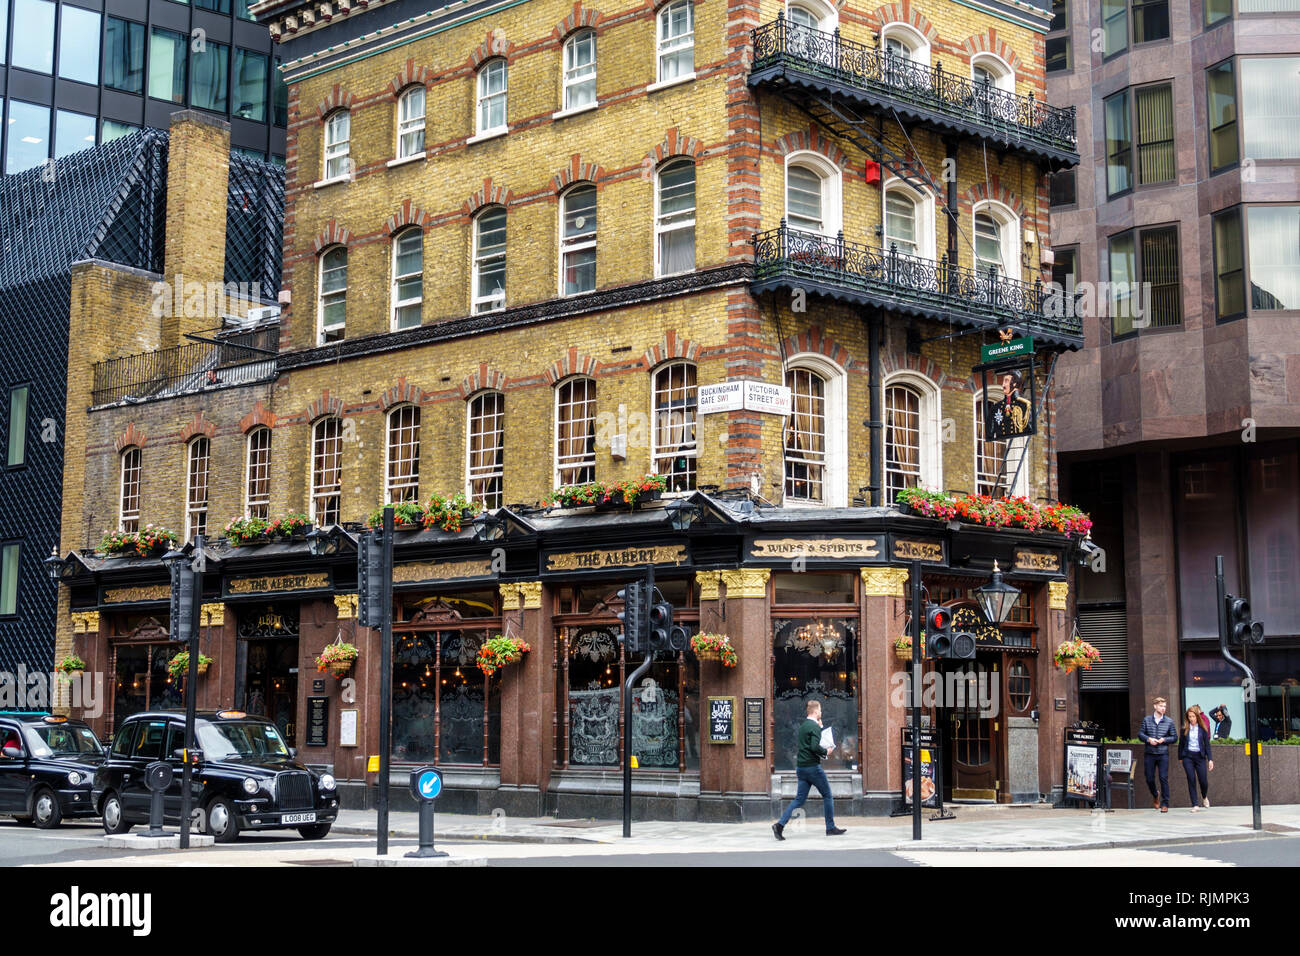 Regno Unito Gran Bretagna Inghilterra Londra Westminster The Albert Pub Vittoriano edificio pubblico esterno edificio in mattoni nero taxicab ta Foto Stock